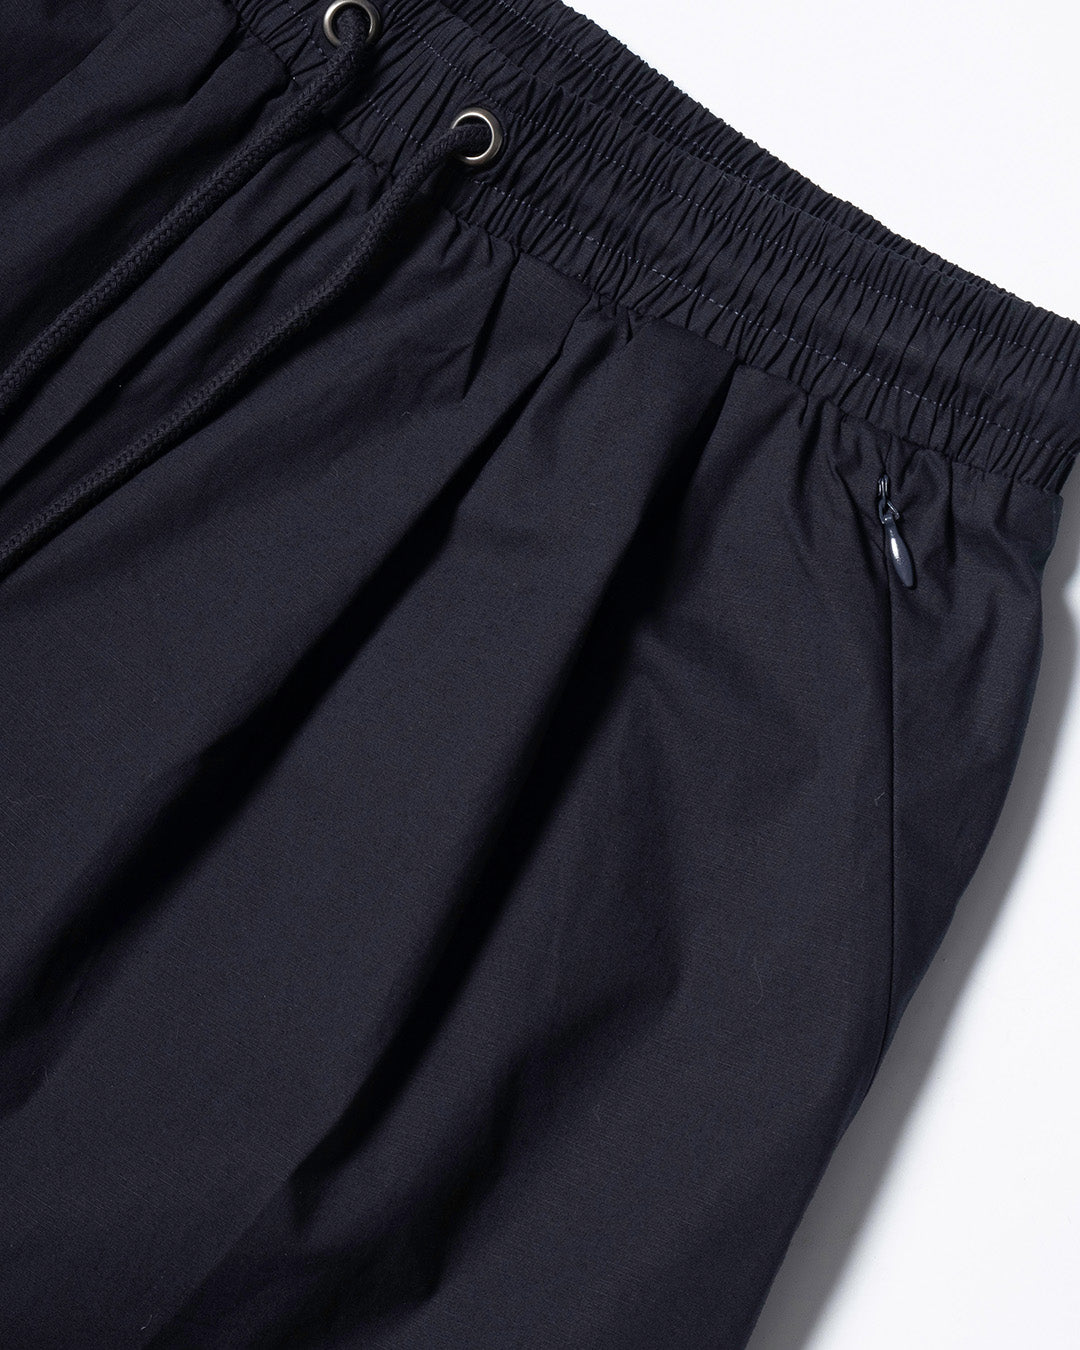 EZ Shorts / Cotton Spandex - Black